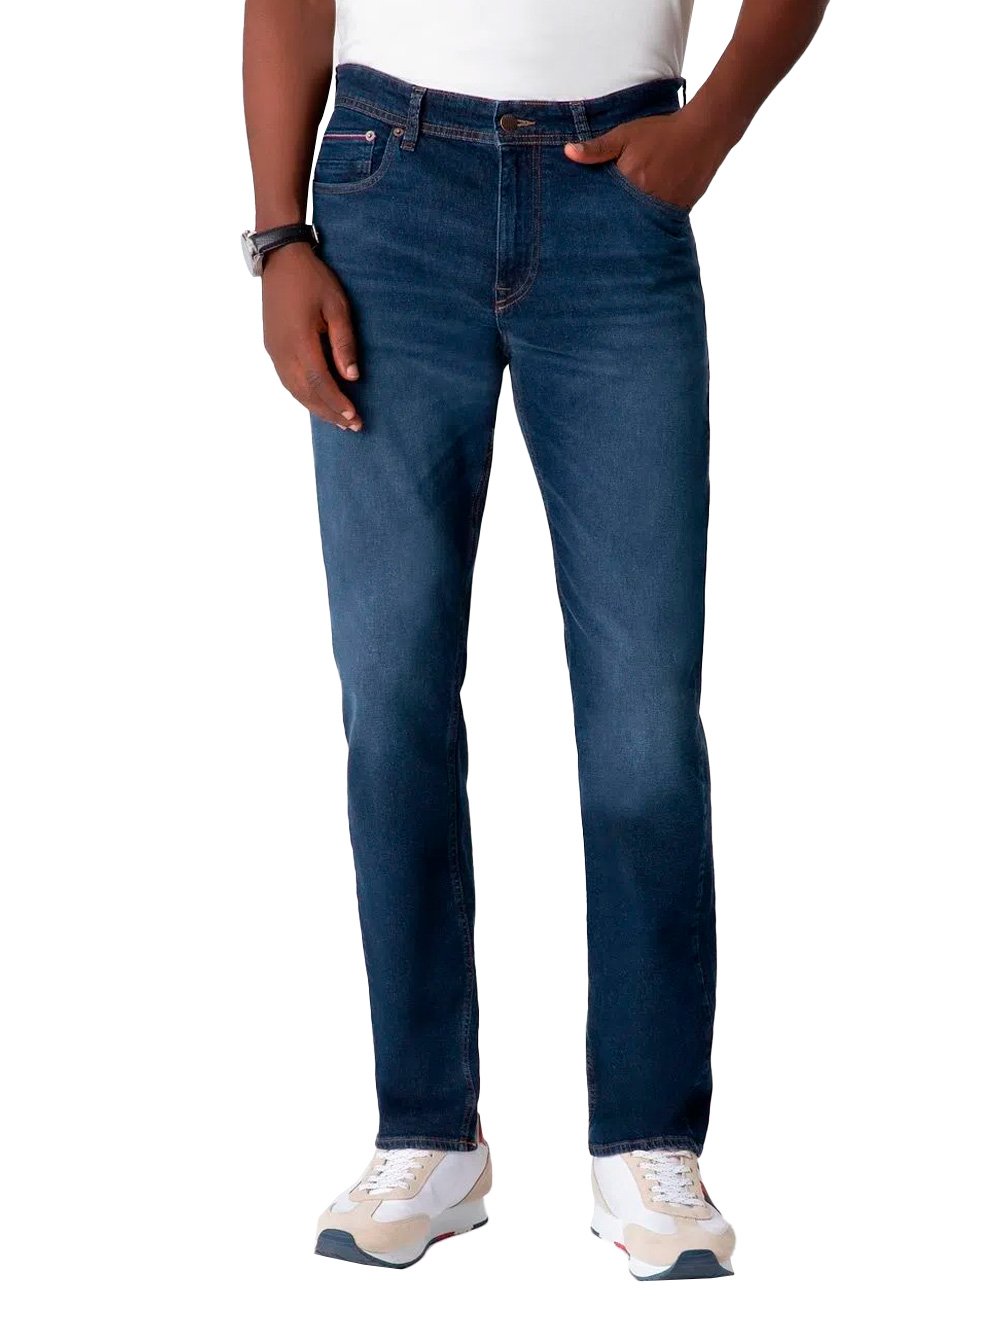 Calça Tommy Hilfiger Jeans Masculina Mercer Normal Rise Escura